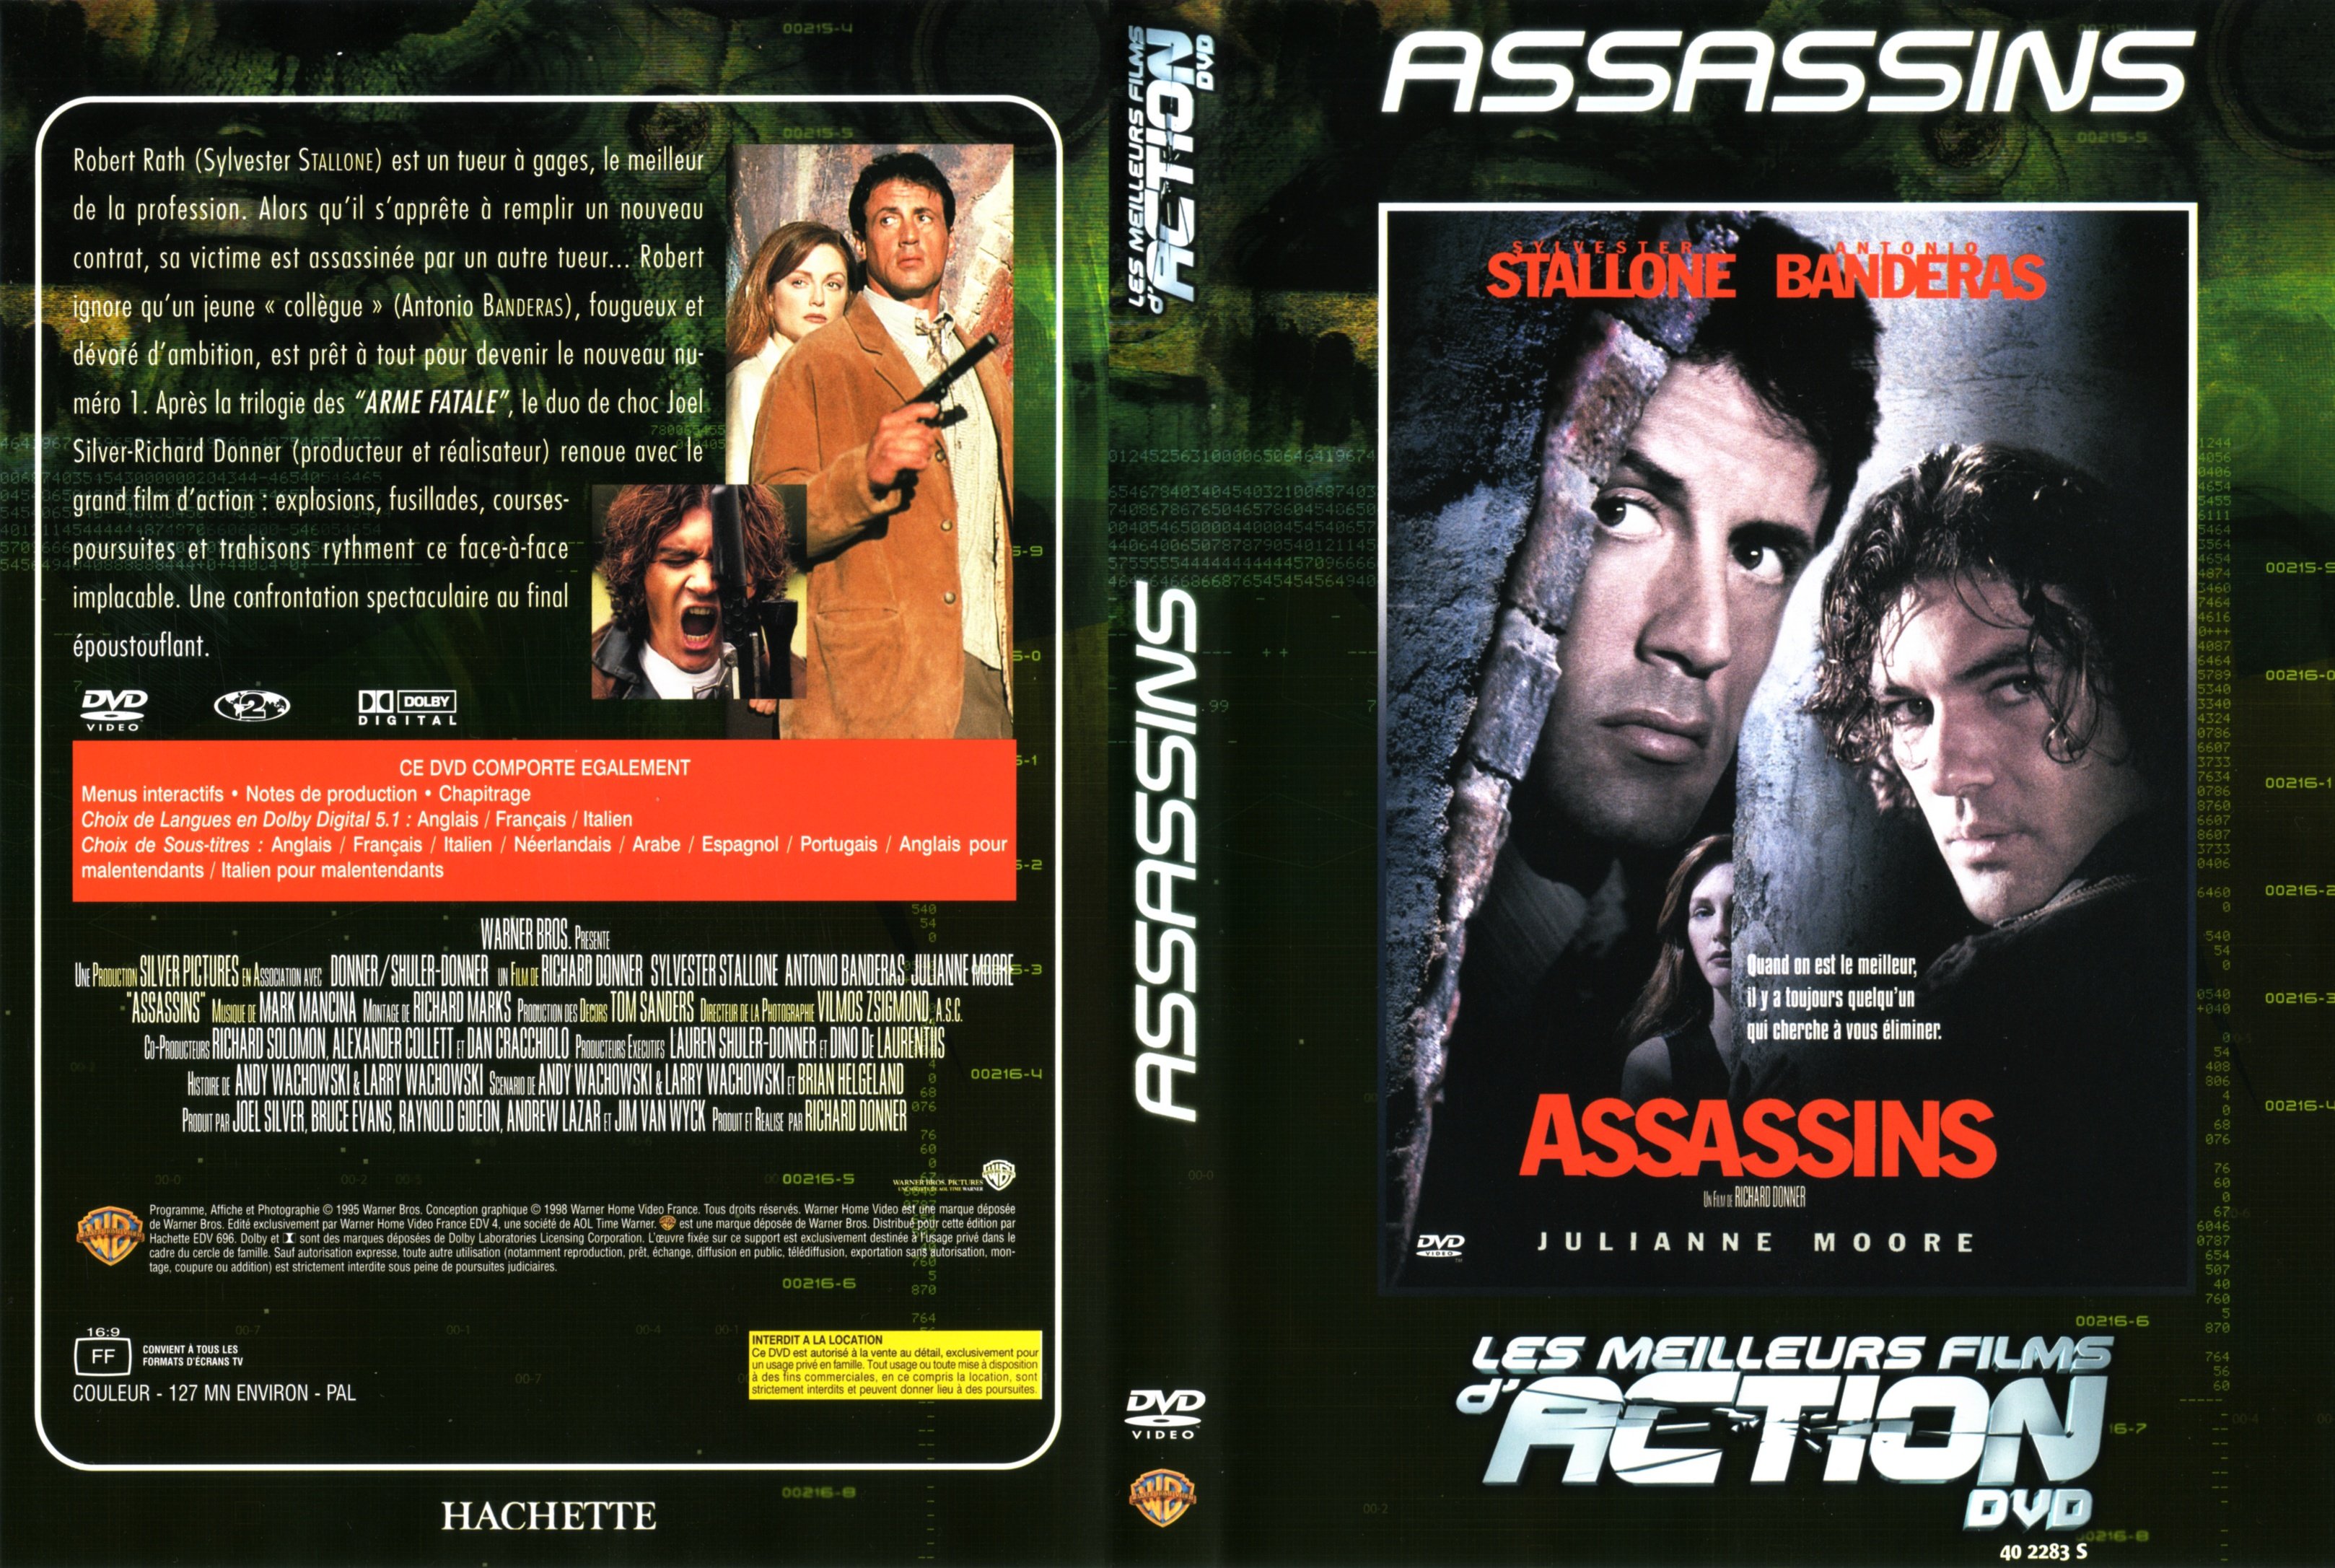 Jaquette DVD Assassins